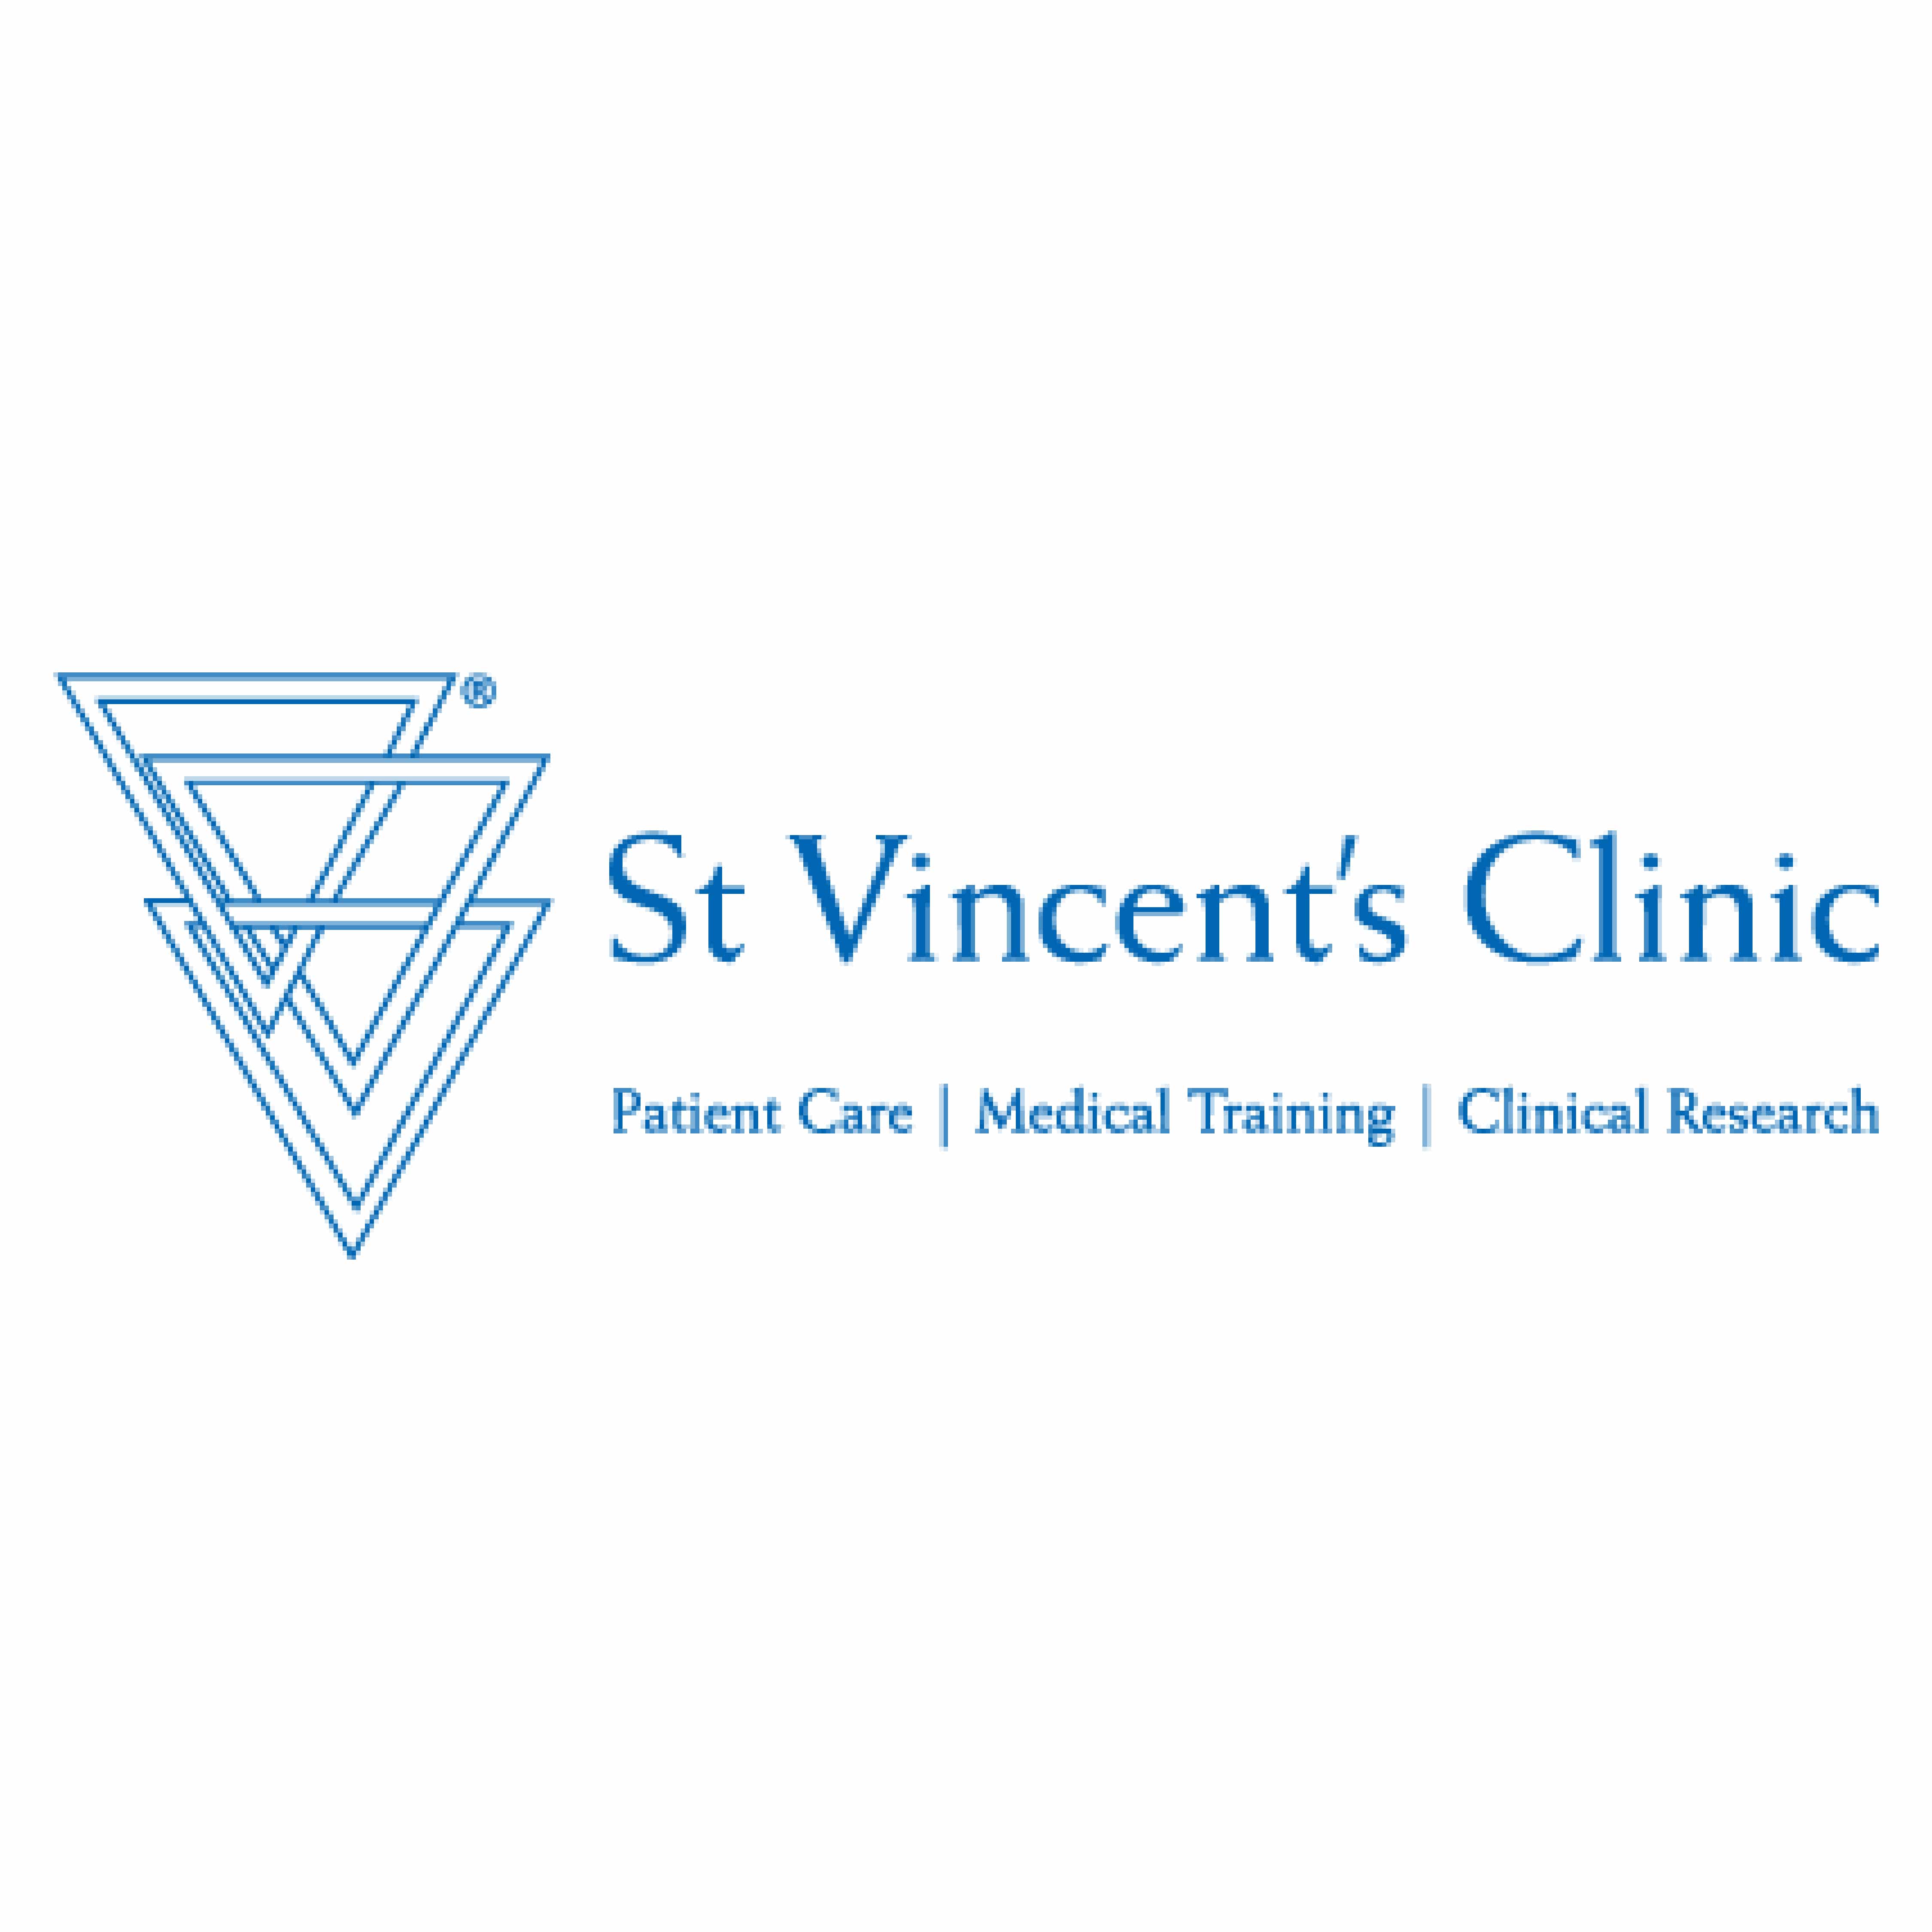 St Vincent's Clinic